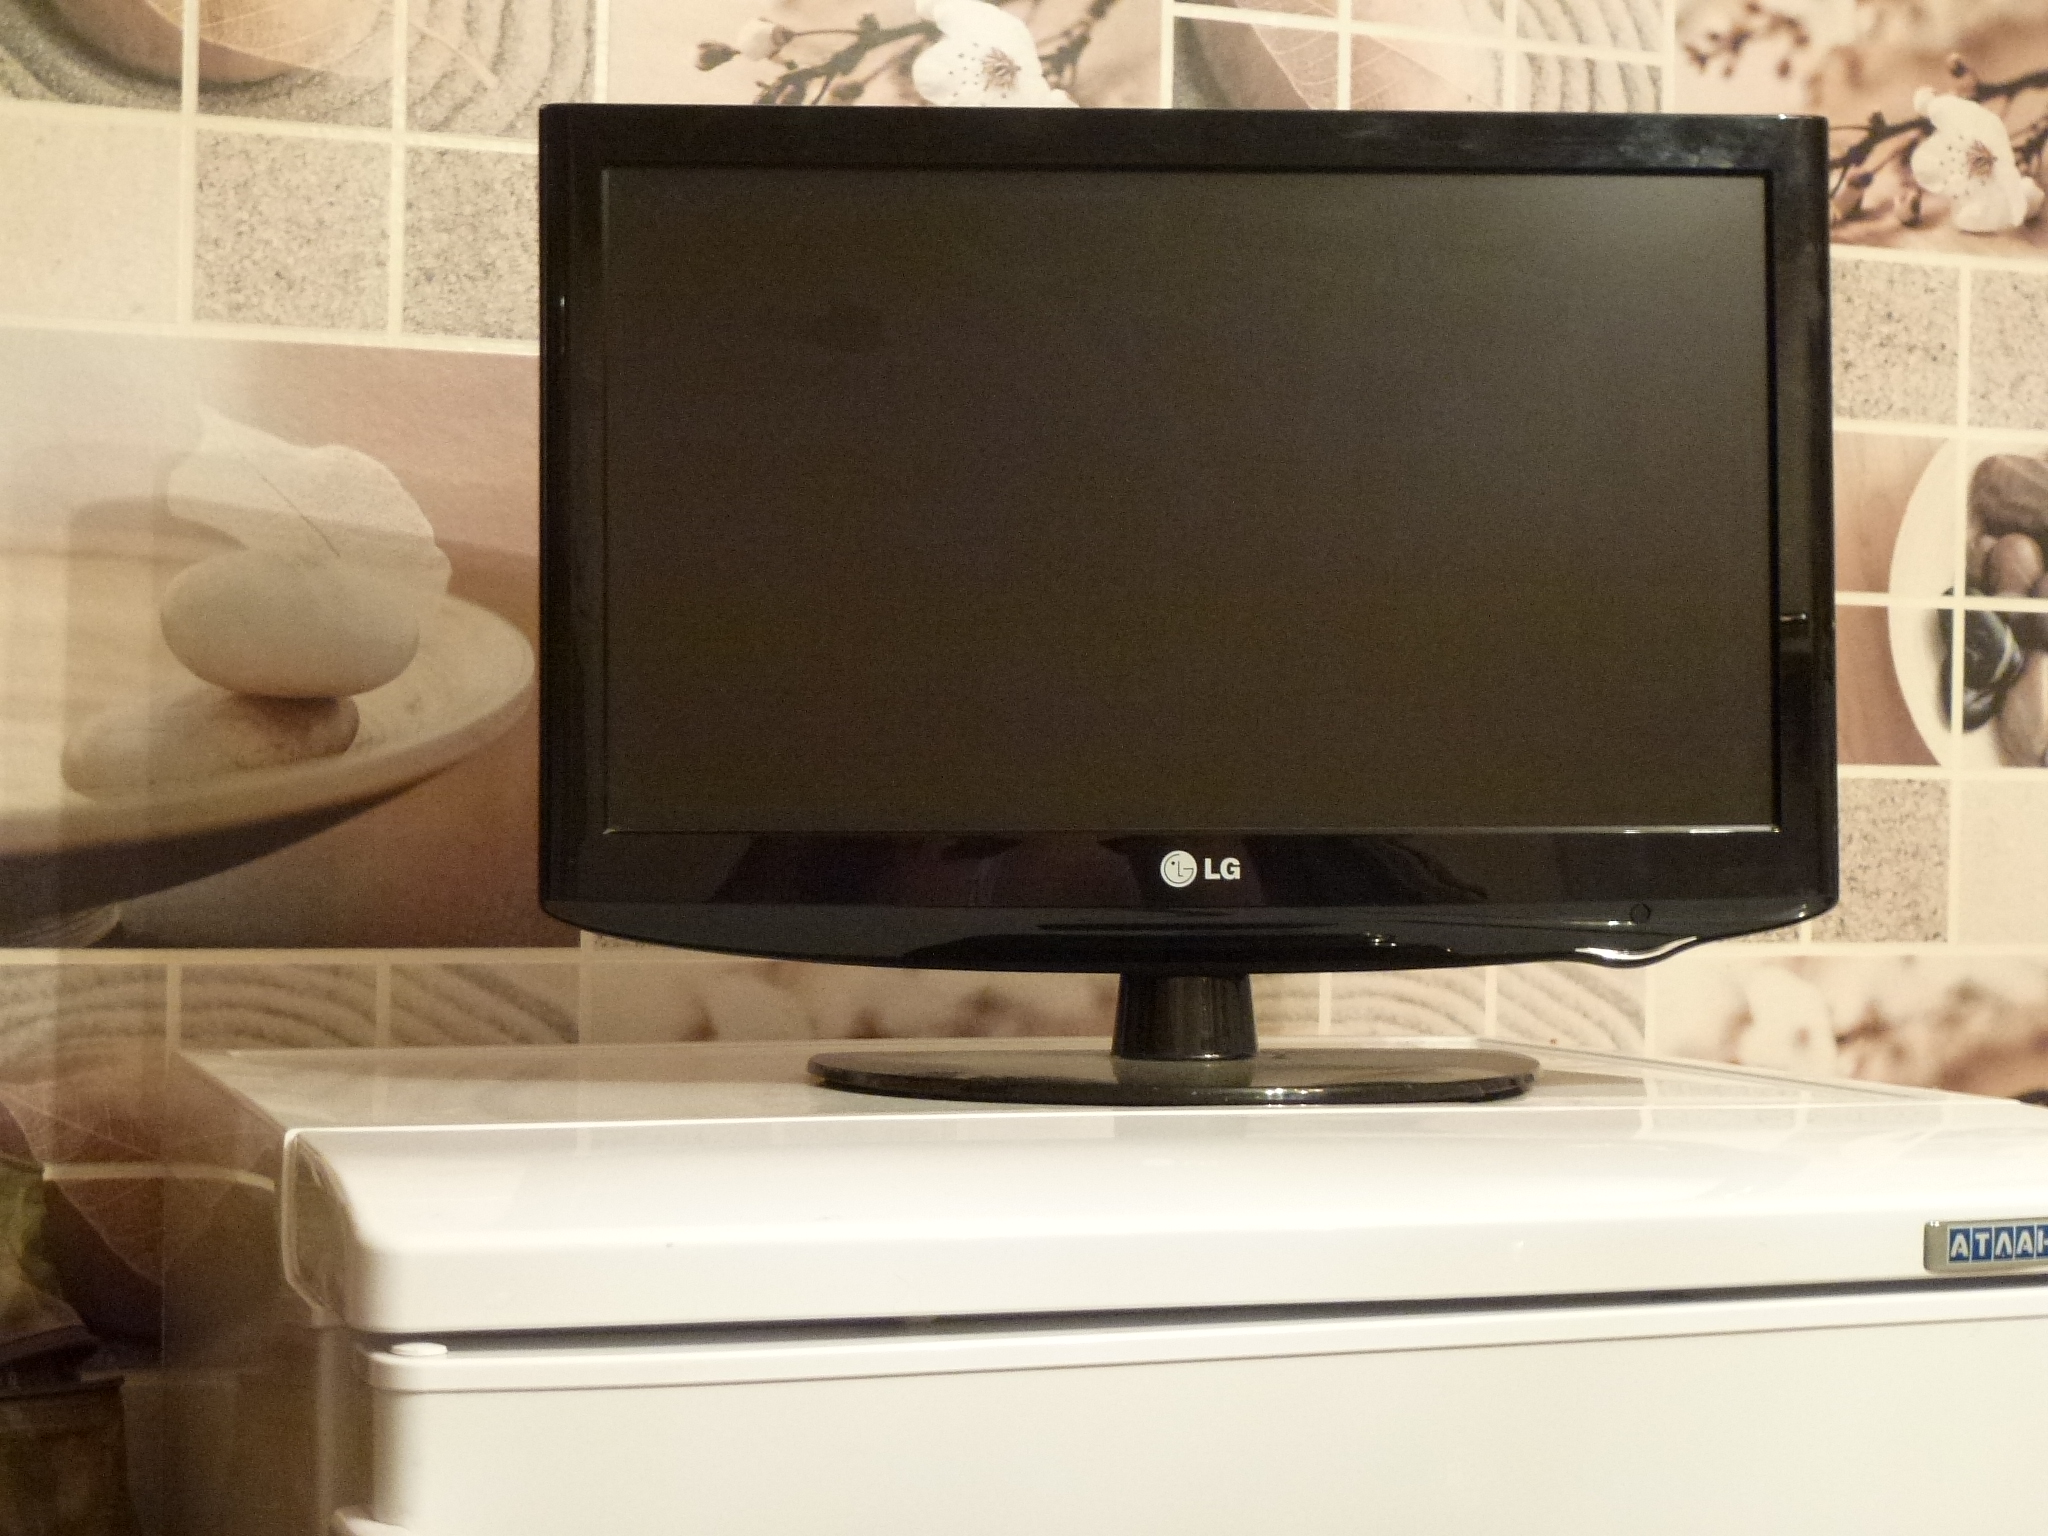 Куплю телевизор бу дешево. Маленький телевизор. Маленький плазменный телевизор. Телевизор LG маленький. Телевизор маленький плоский.